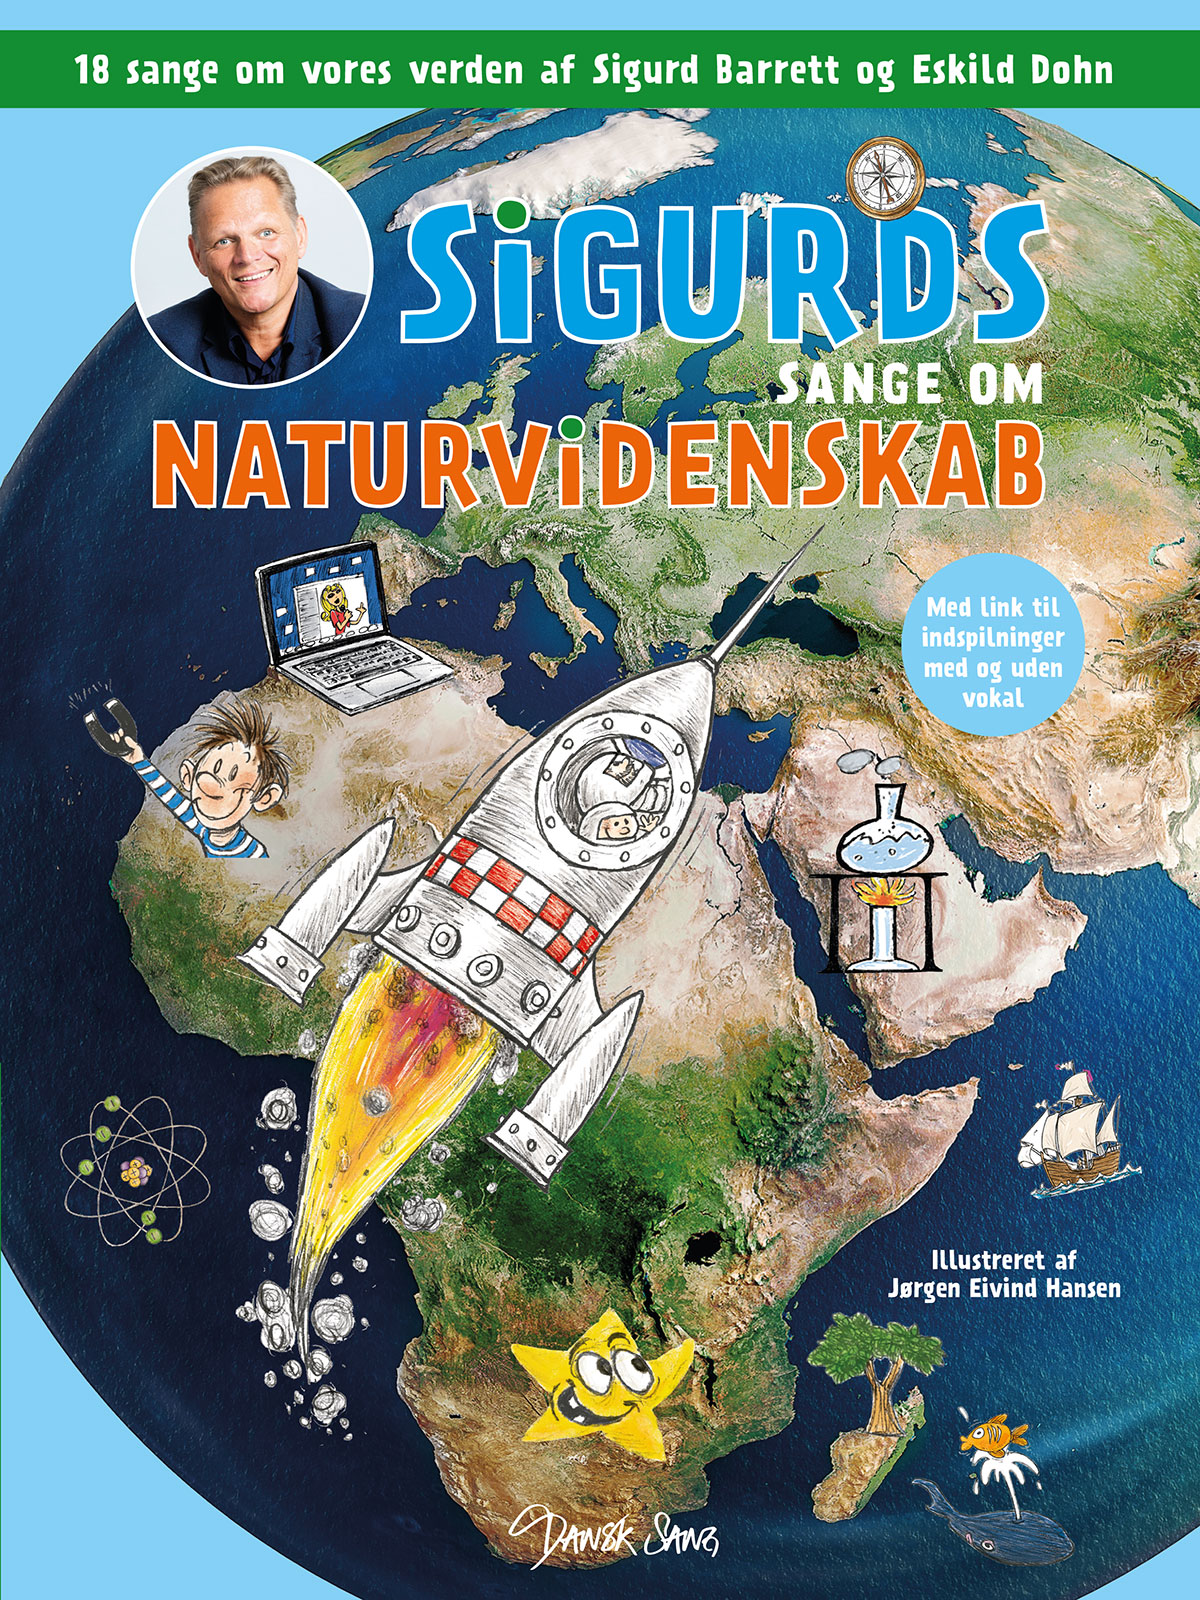 Sigurd fortæller om naturhistorie